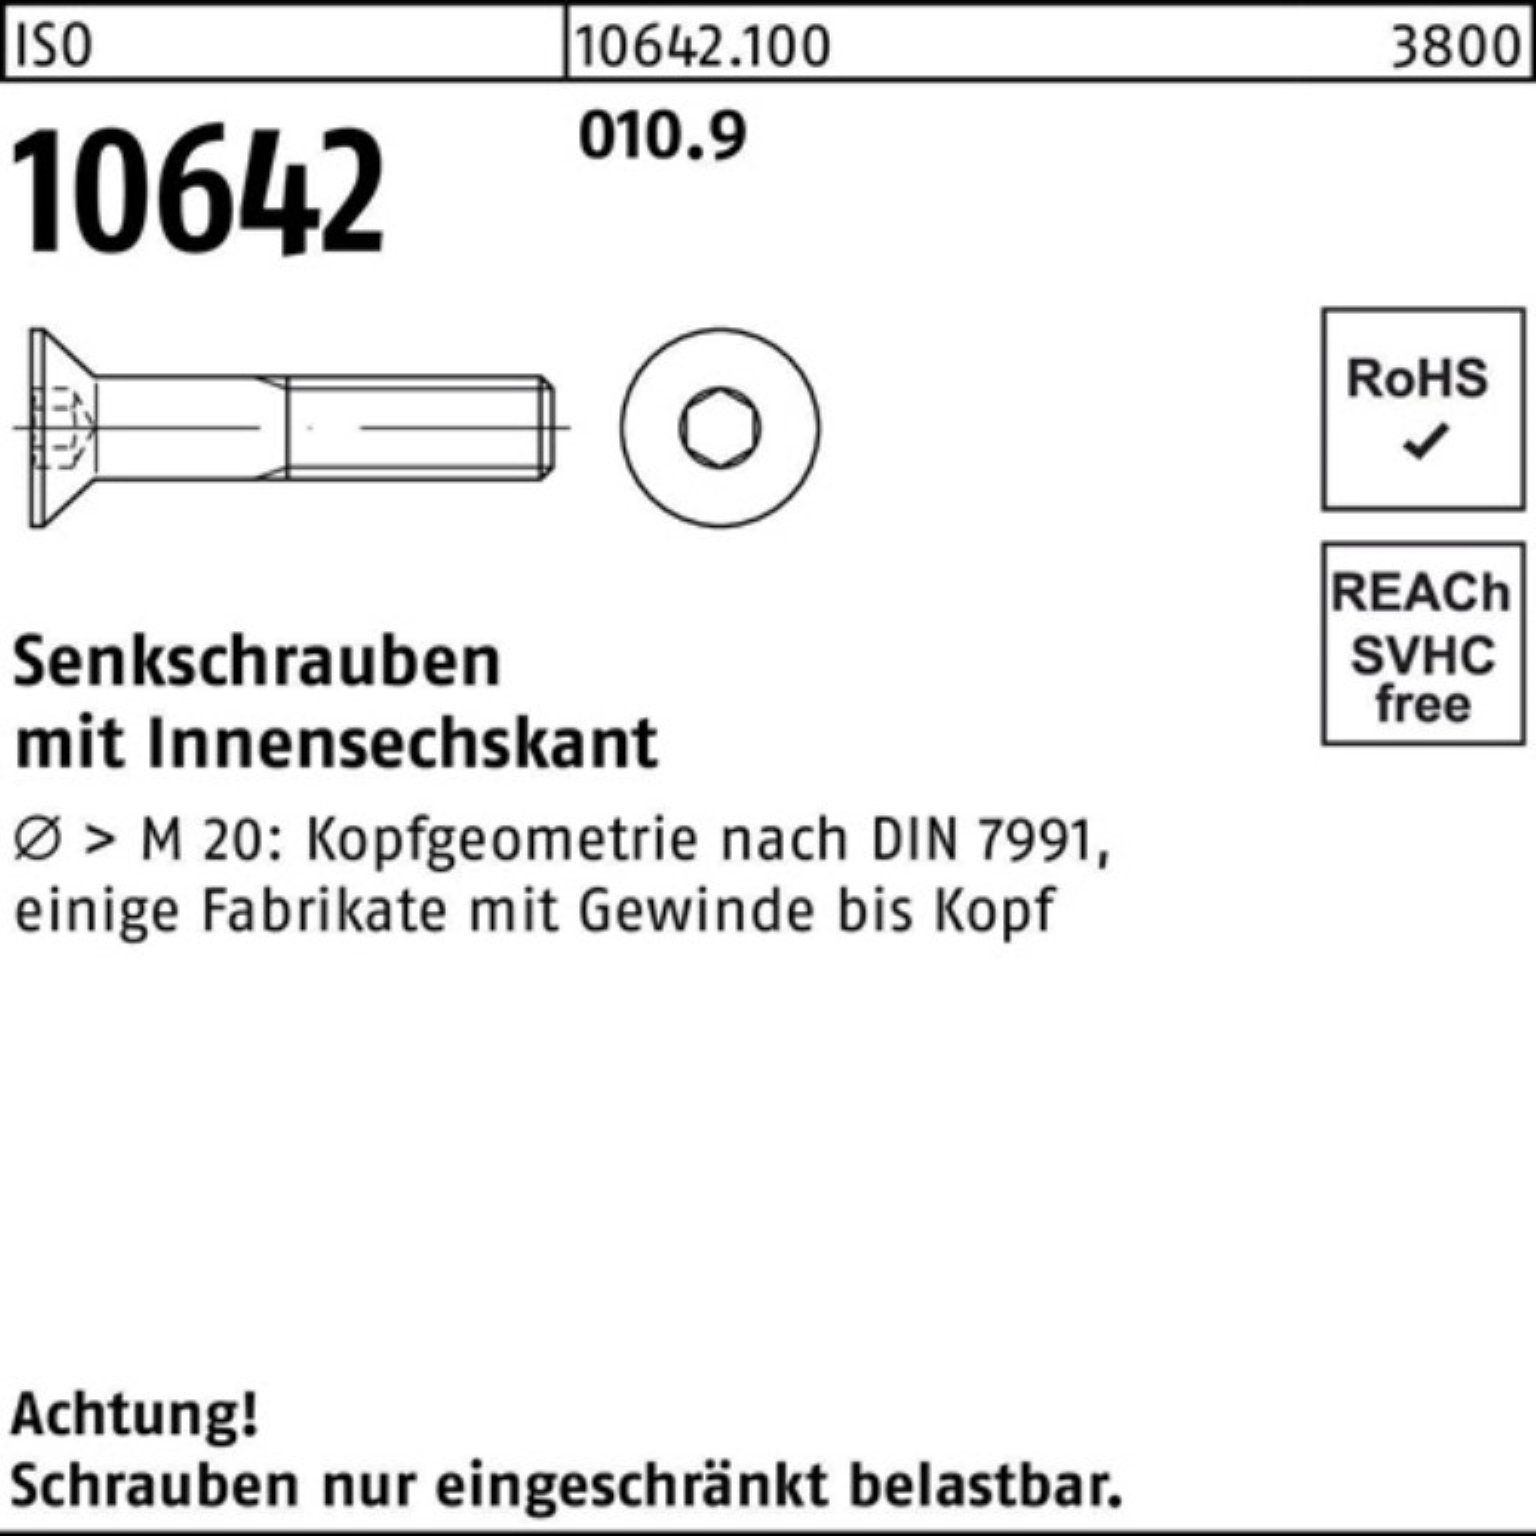 Reyher Senkschraube IS 010.9 Stück ISO Pack M24x 10642 Innen-6kt Senkschraube 100er 1 200